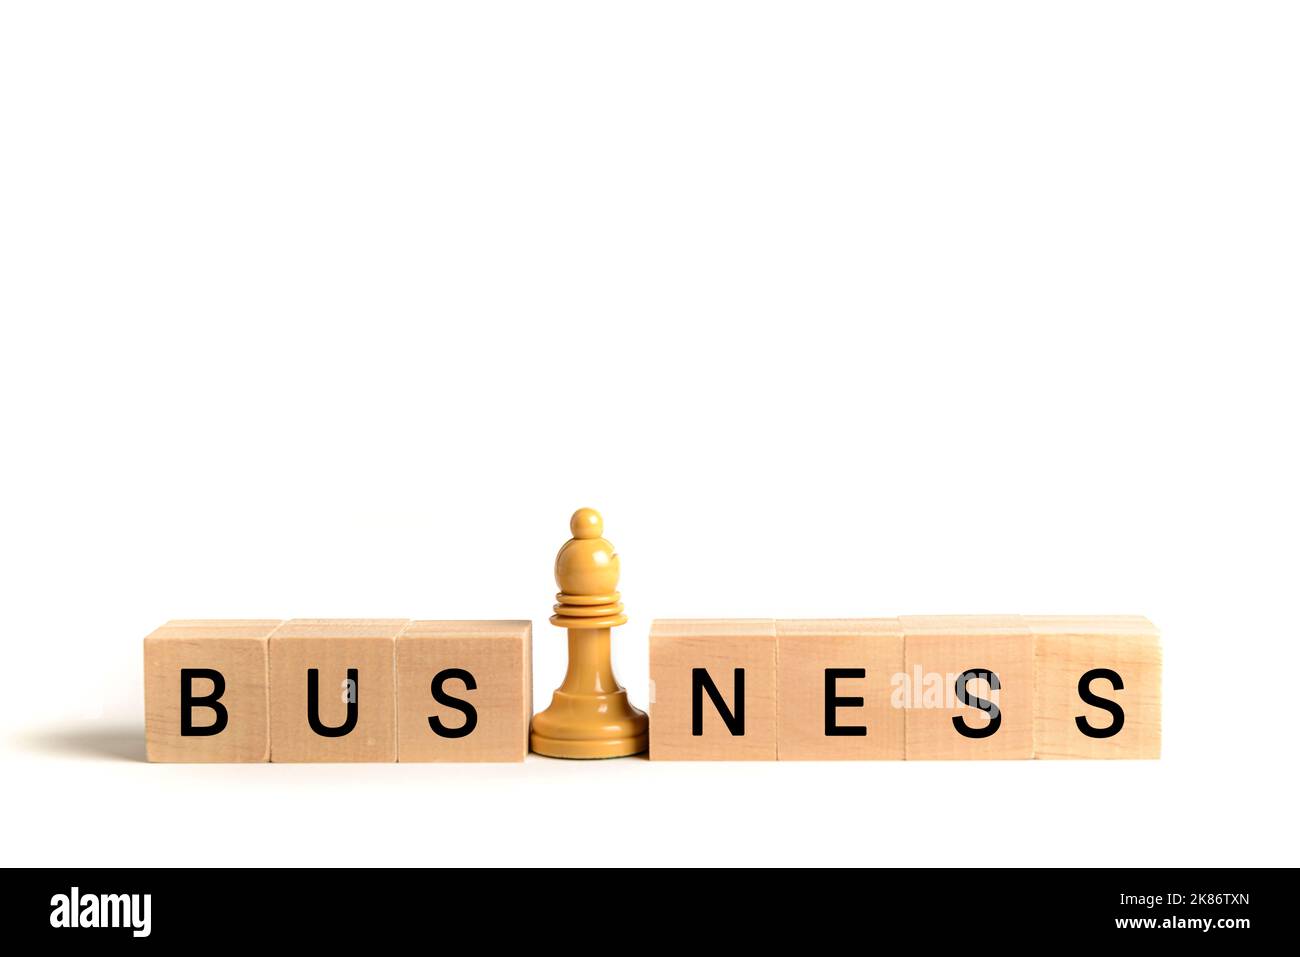 Weißer Schachbischof neben Holzblöcken, die das Wort 'Business' bilden, auf weißem Hintergrund. Bild zur Veranschaulichung des Konzepts von Führung und Geschäft Stockfoto